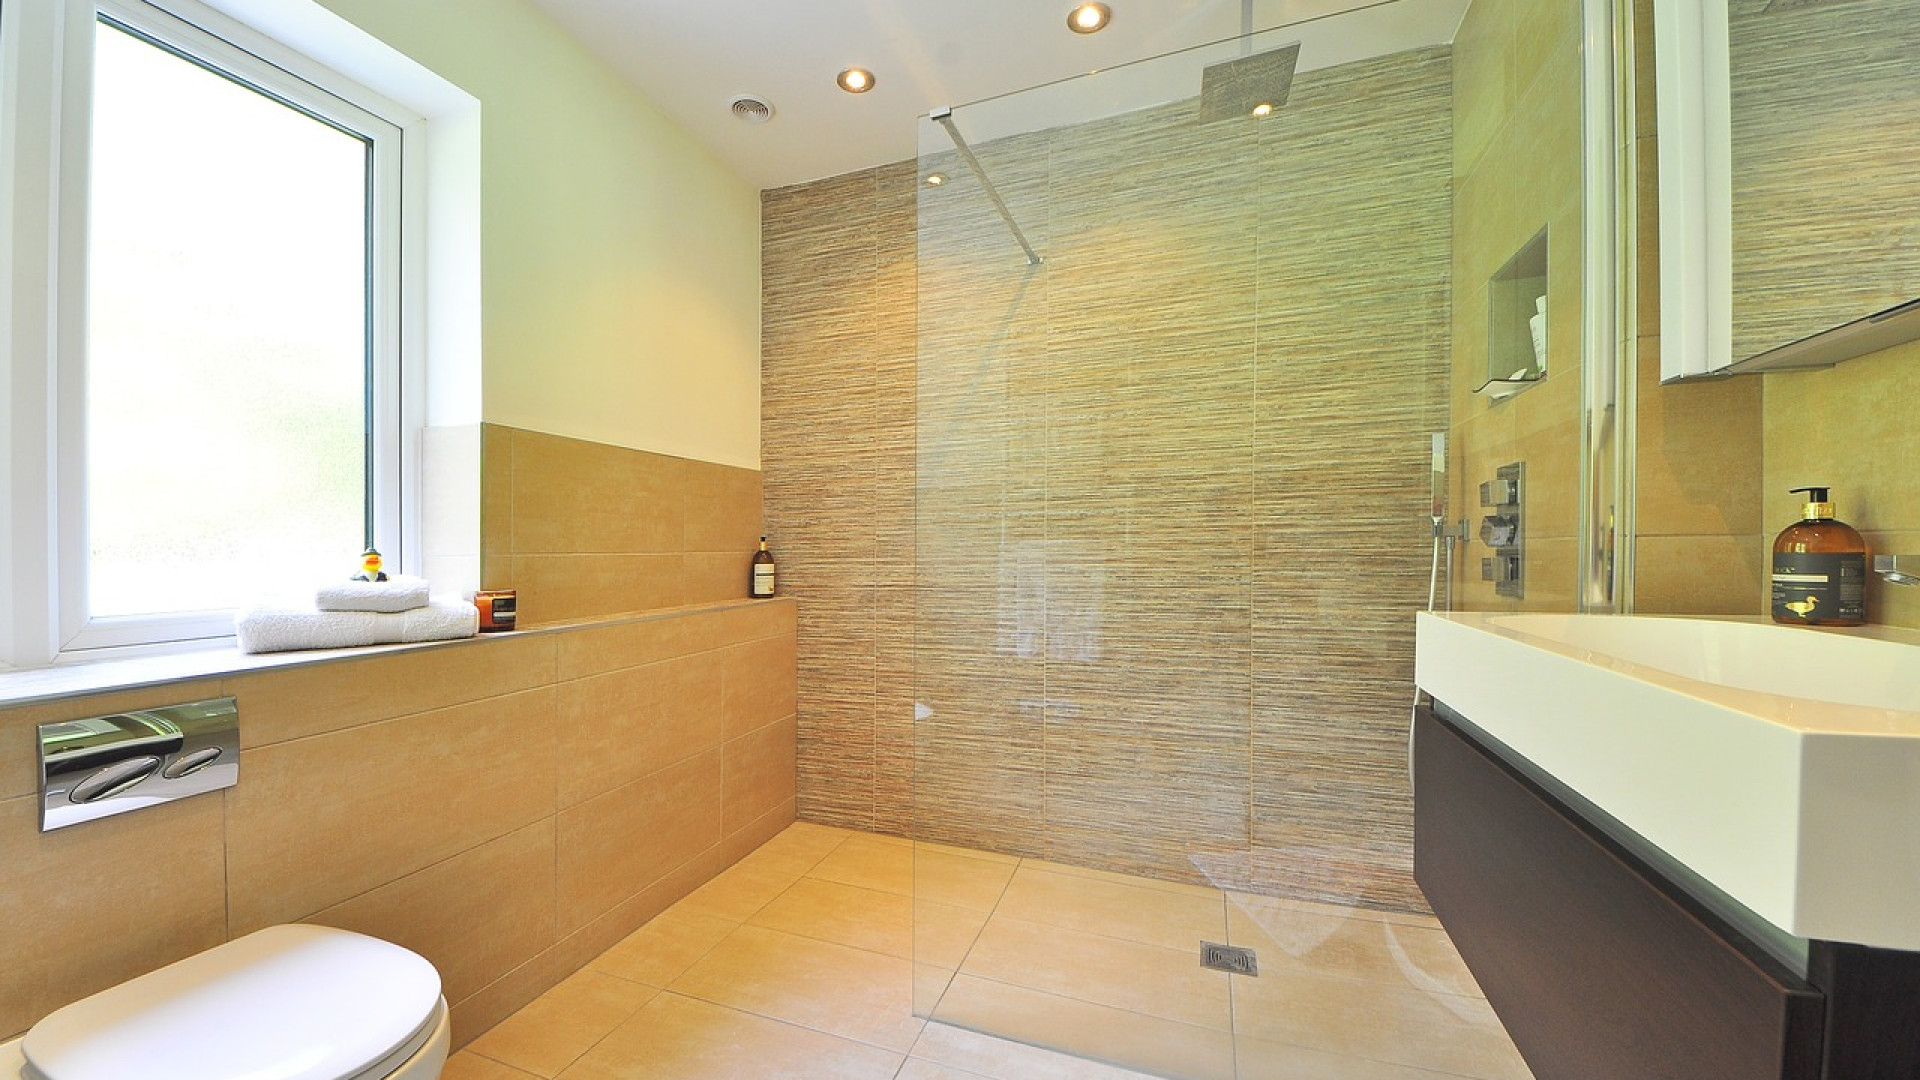 Les avantages d’une rénovation professionnelle de salle de bains